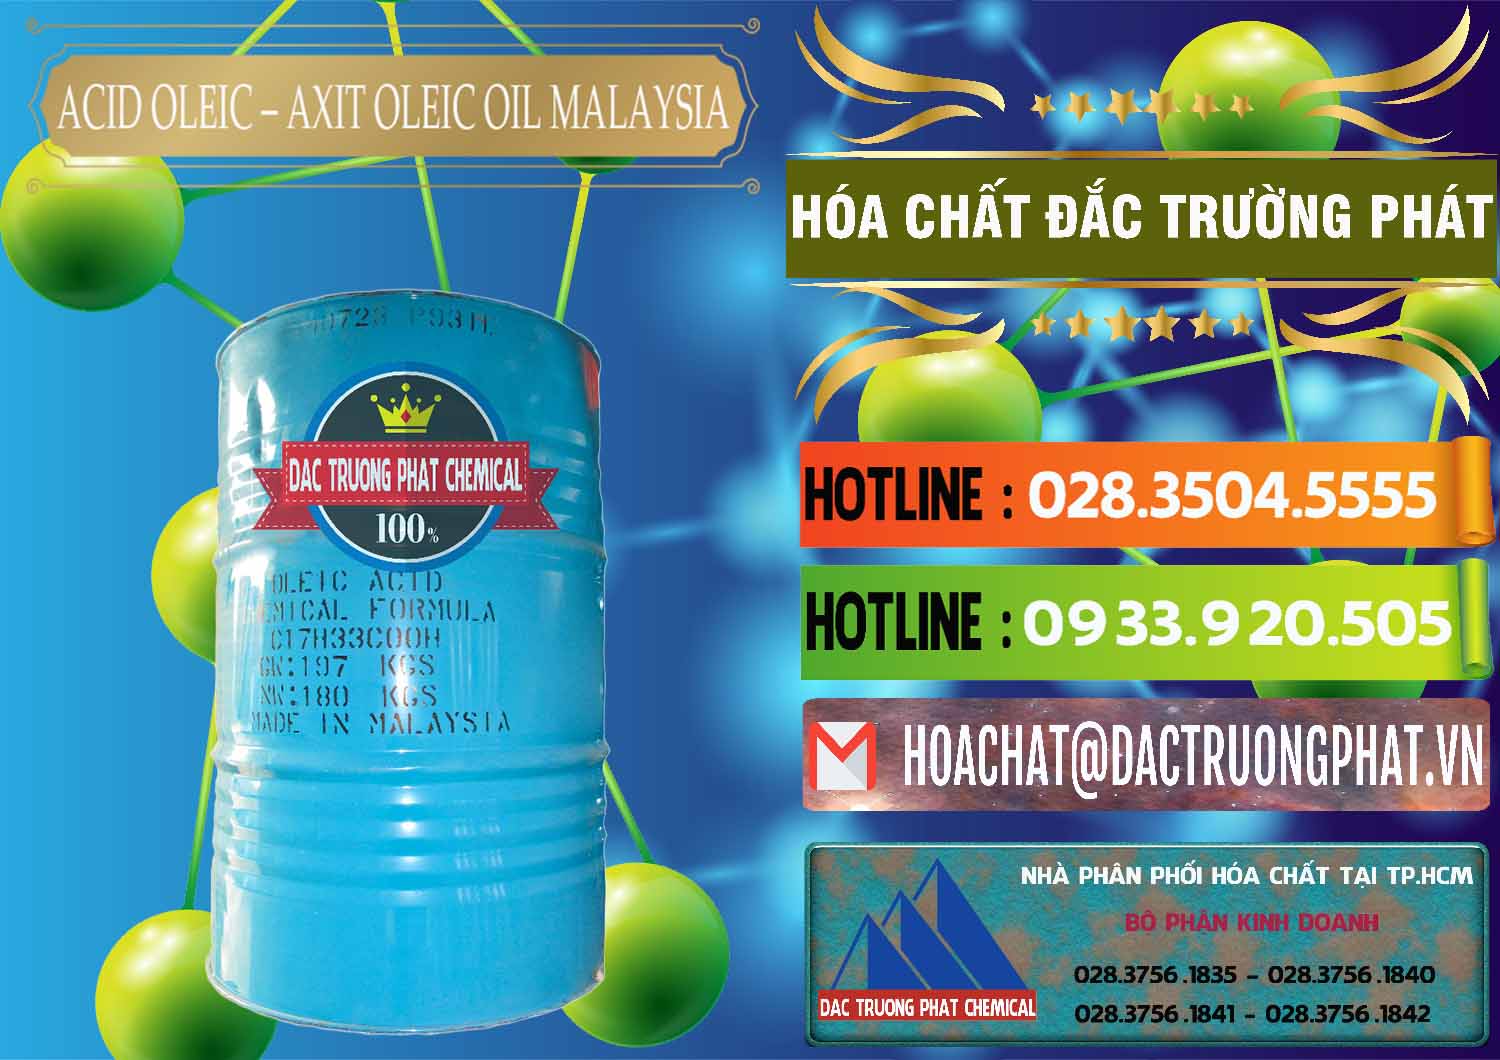 Đơn vị chuyên bán & cung cấp Acid Oleic – Axit Oleic Oil Malaysia - 0013 - Cty phân phối và kinh doanh hóa chất tại TP.HCM - cungcaphoachat.com.vn